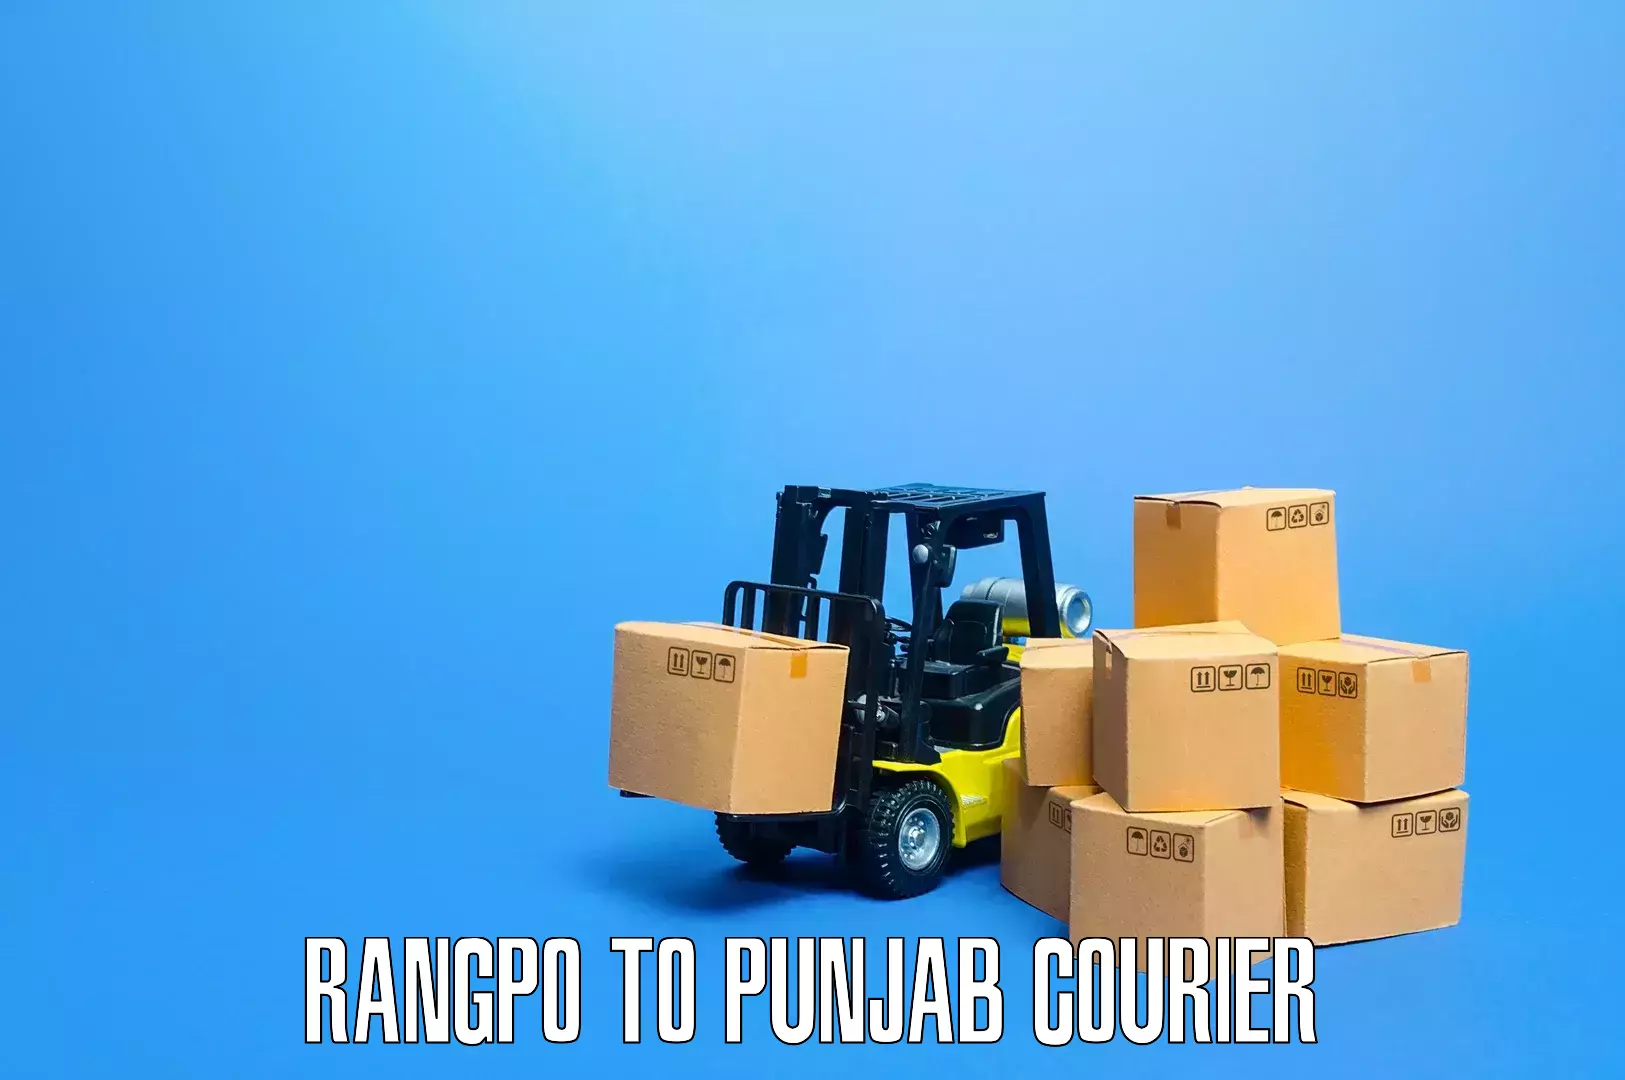 Specialized moving company Rangpo to Amritsar